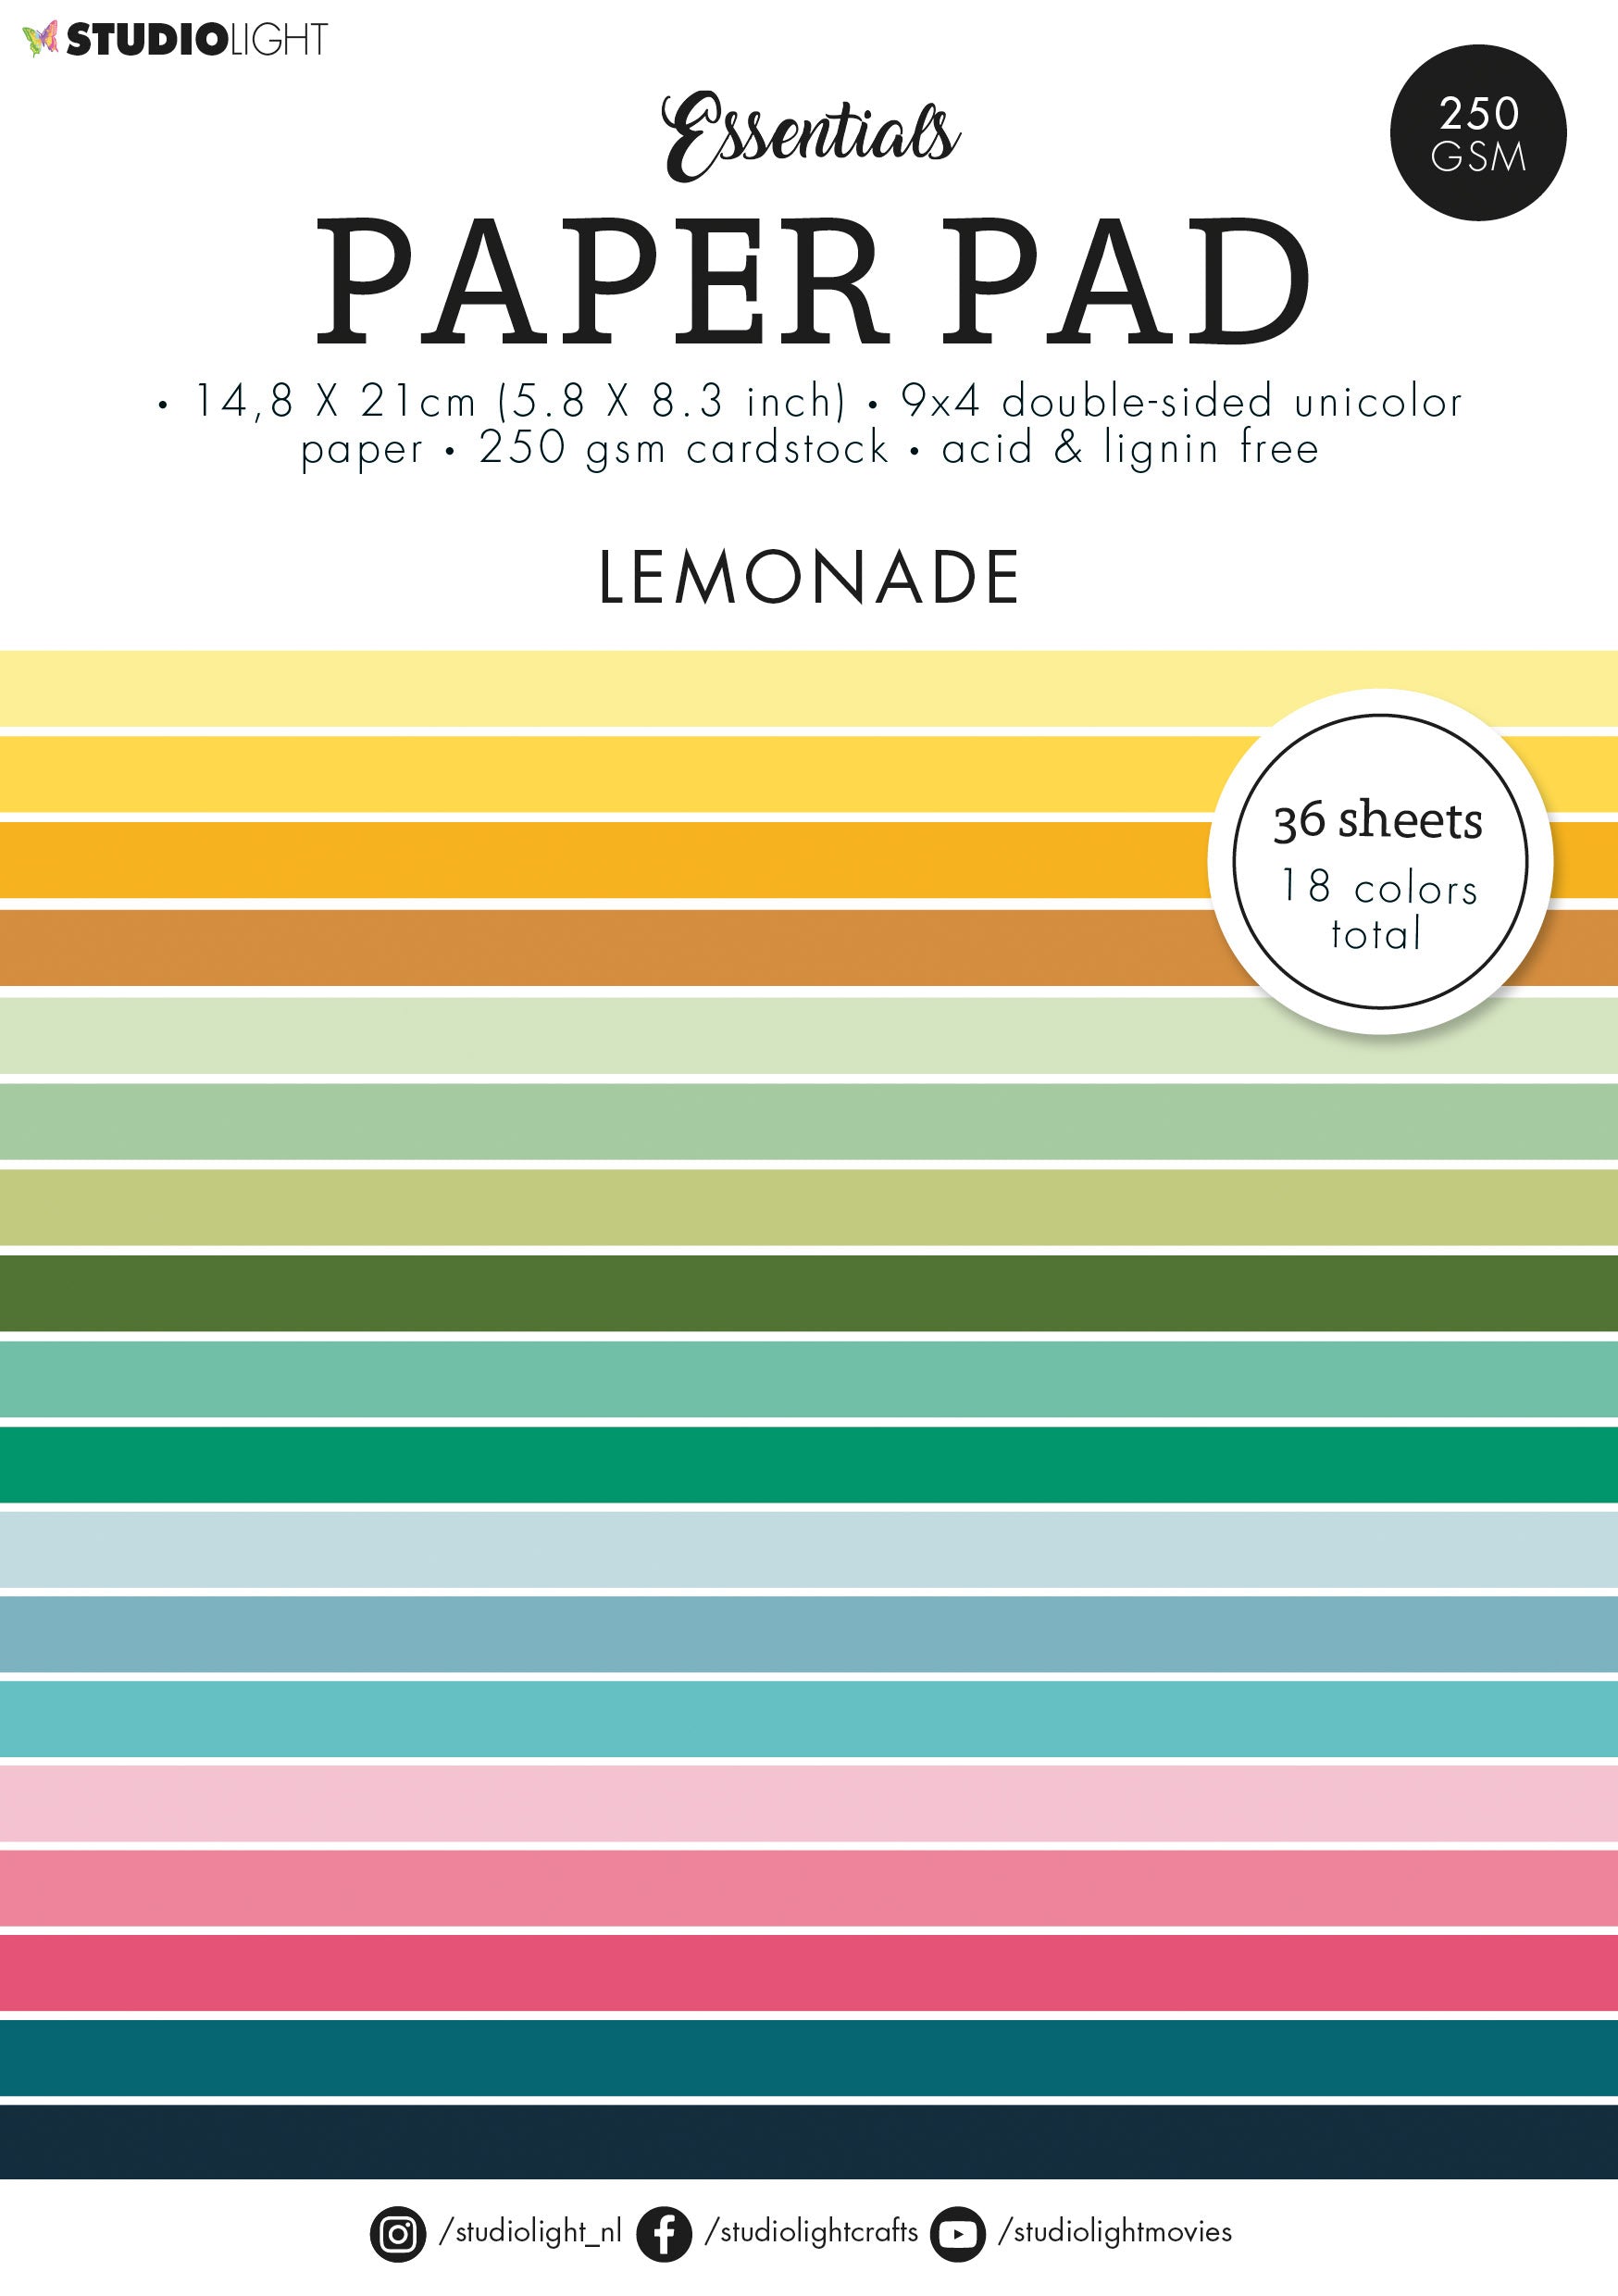 SL Paper Pad Unicolor Paper Lemonade Essentials 210x148x9mm 36 SH nr.91